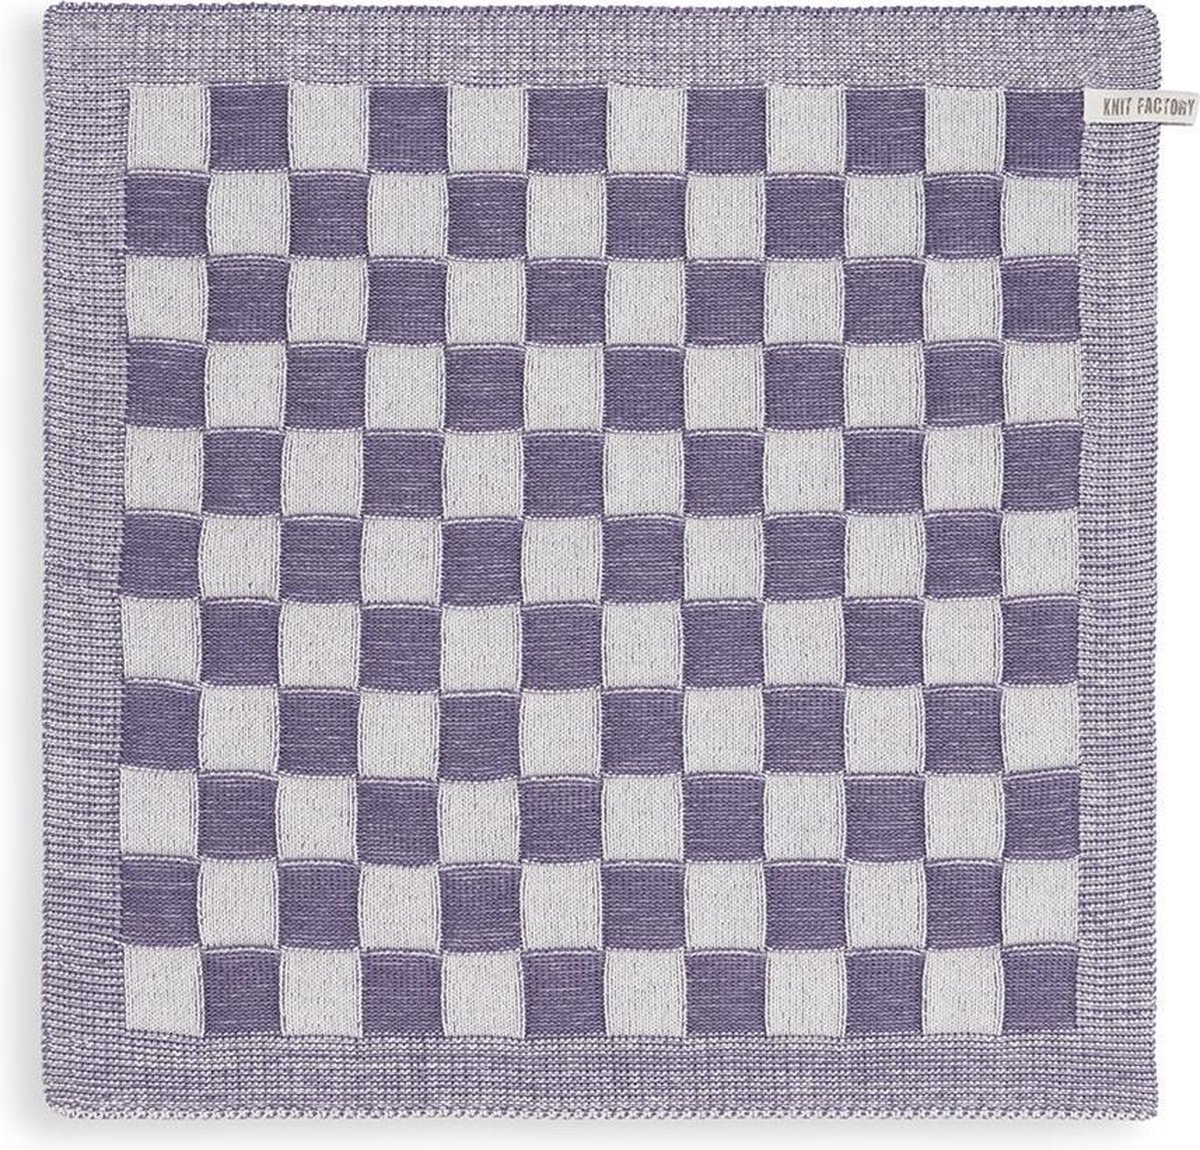 Knit Factory Gebreide Keukendoek - Keukenhanddoek Block - Geblokt motief - Handdoek - Vaatdoek - Keuken doek - Ecru/Violet - Traditionele look - 50x50 cm